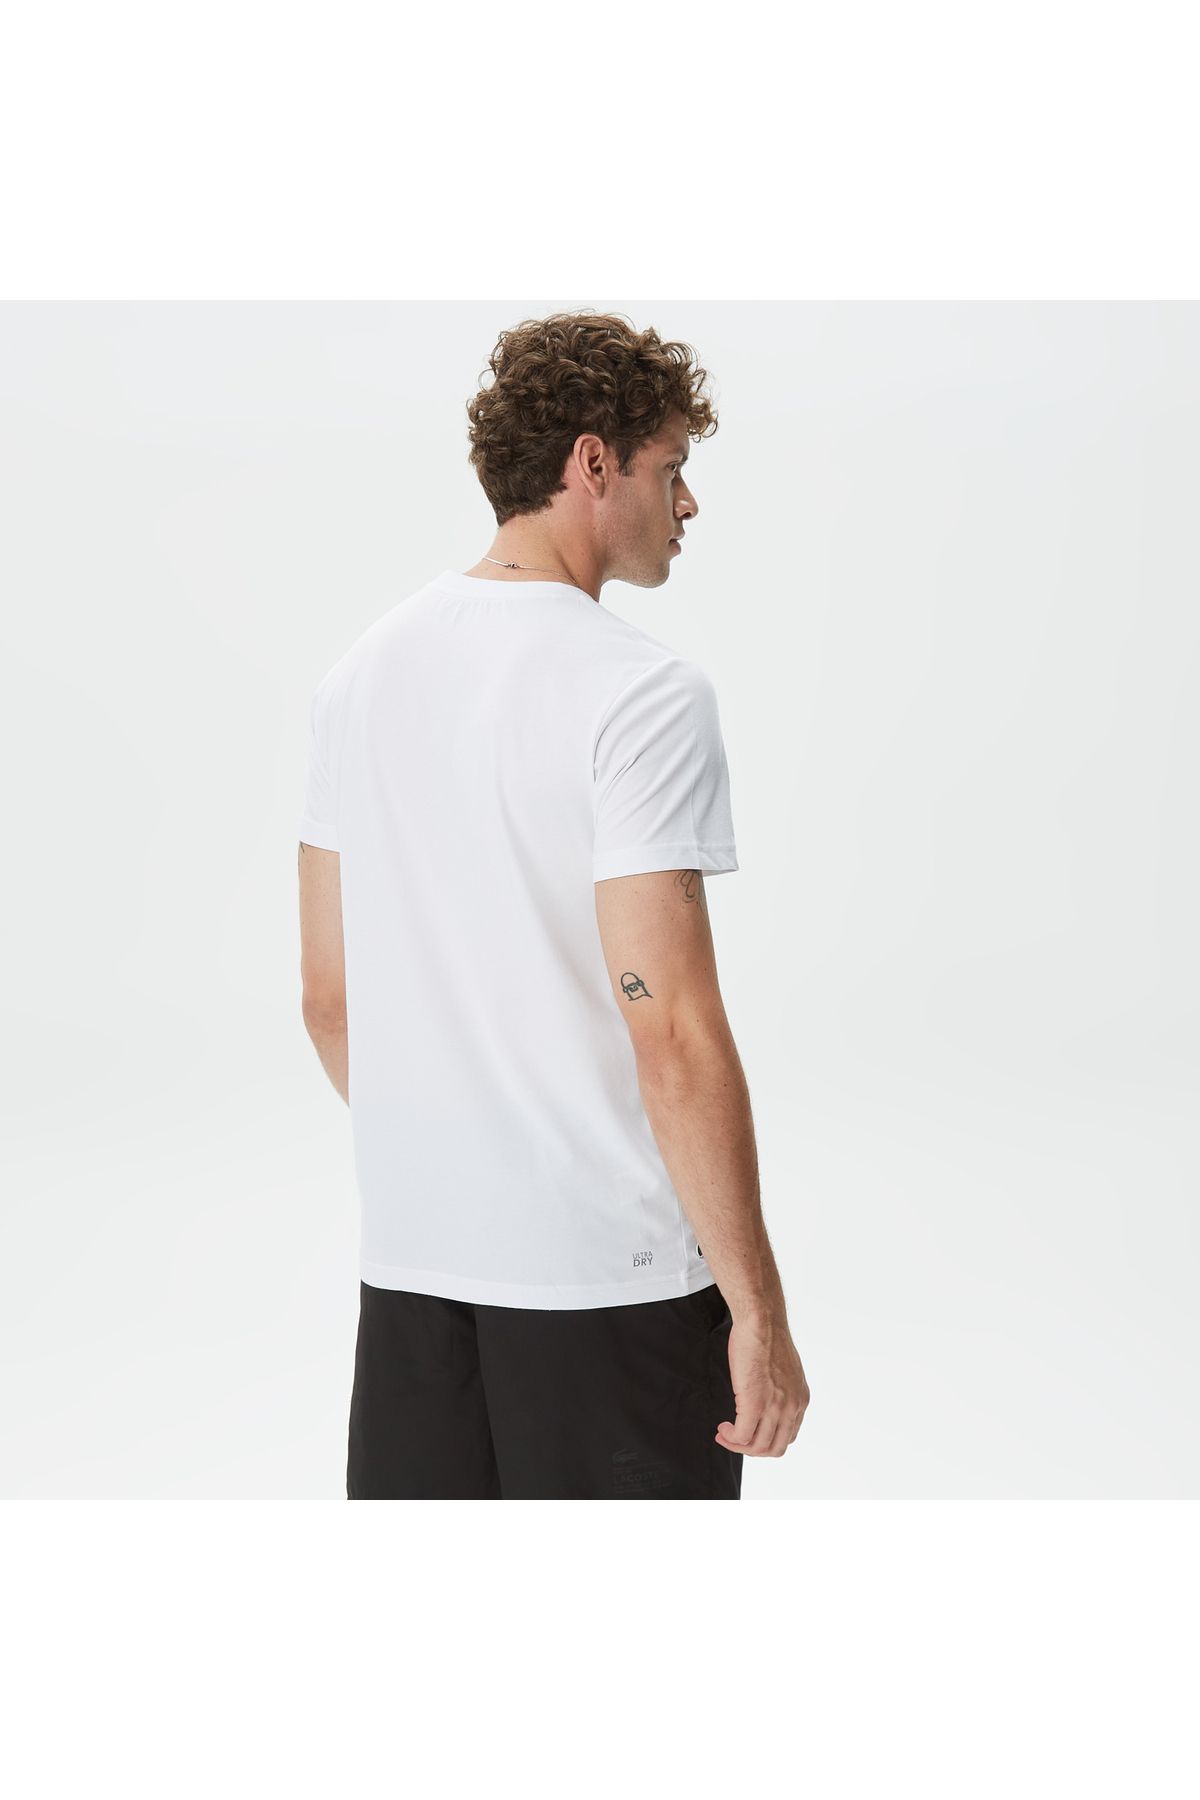 Lacoste ورزش مردان به طور منظم و مناسب پنبه ارگانیک چاپ شده تی شرت سفید